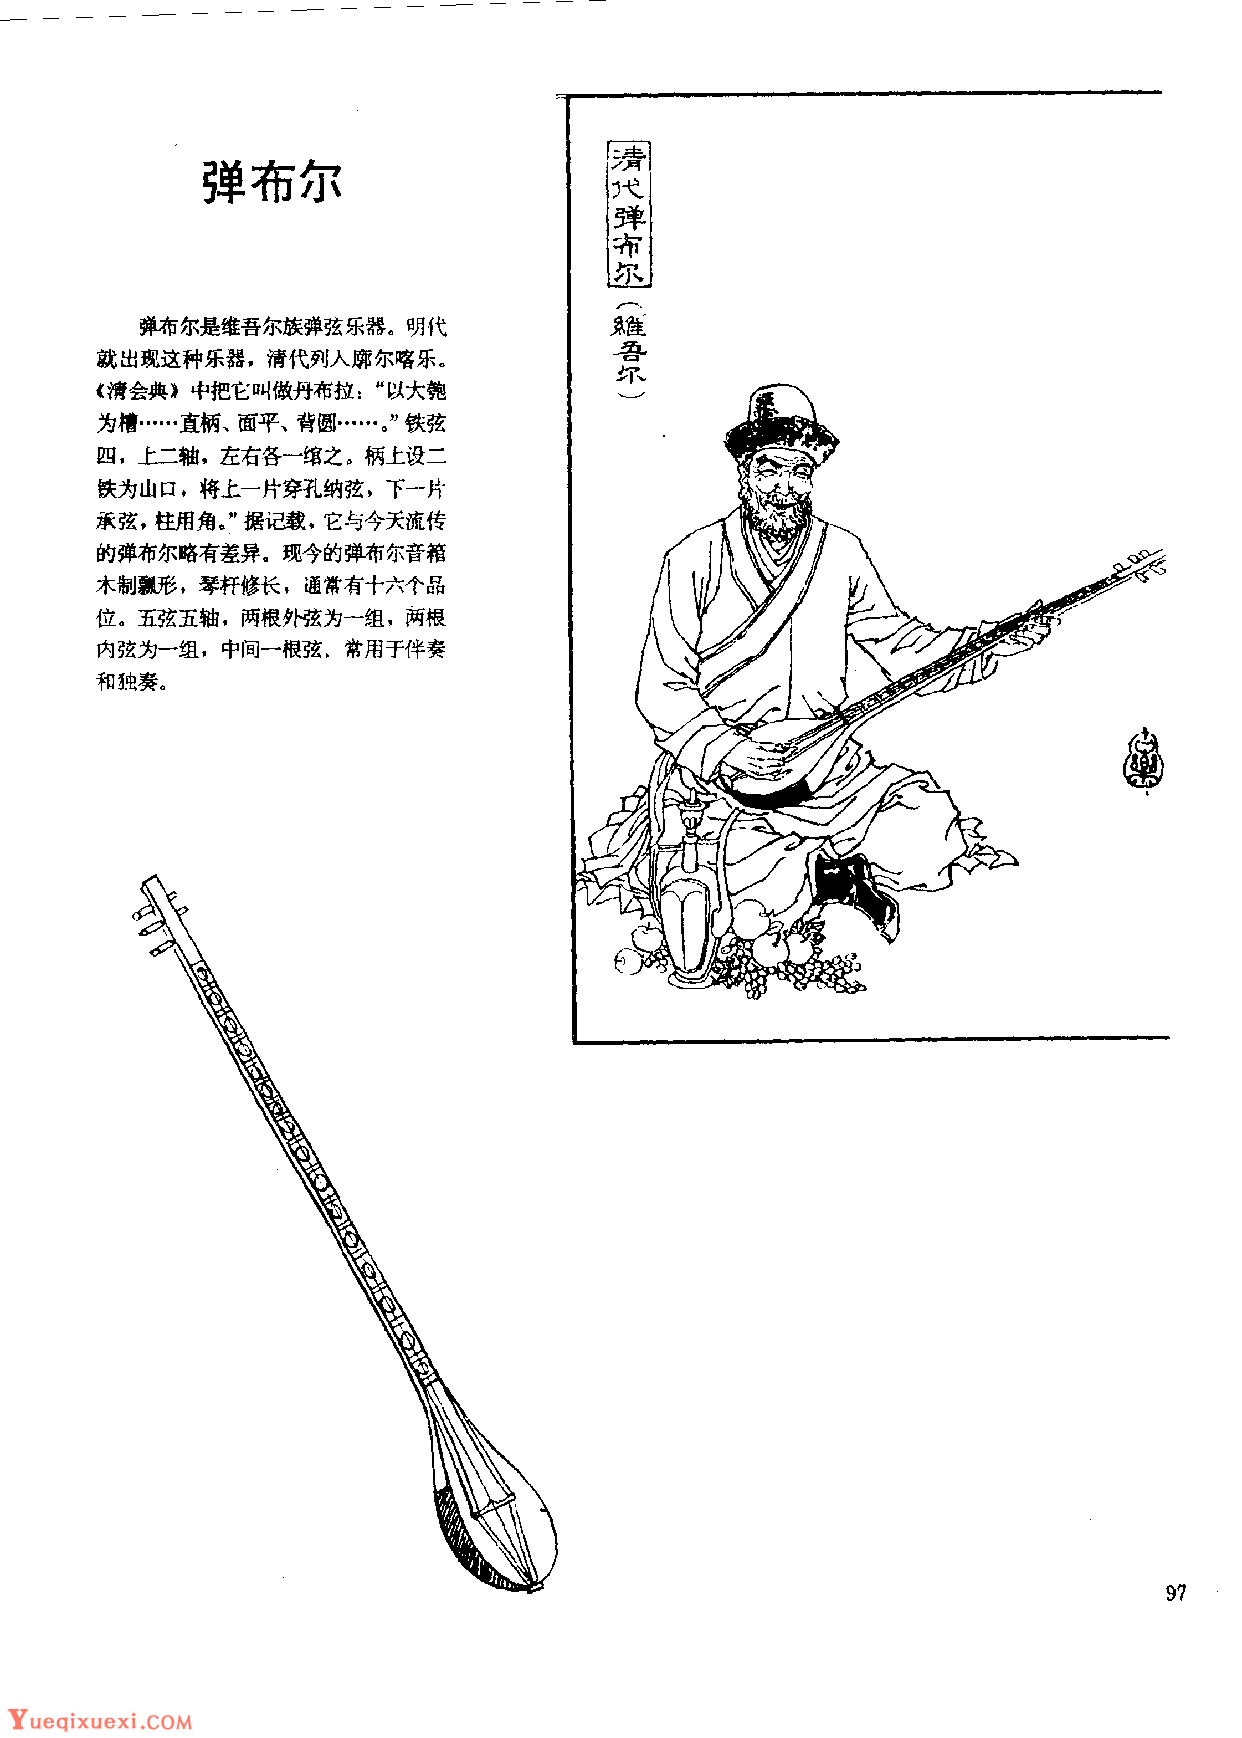 中国古代乐器《弹布尔》